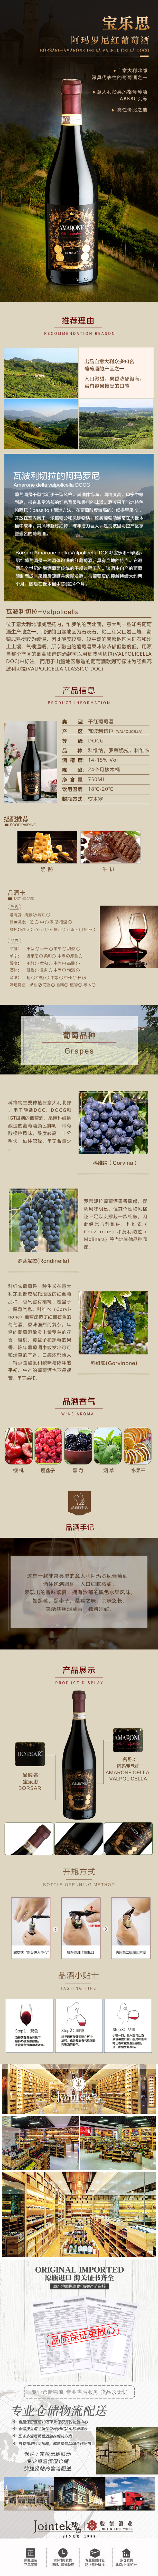 宝乐思-阿玛罗尼红葡萄酒 (2).jpg